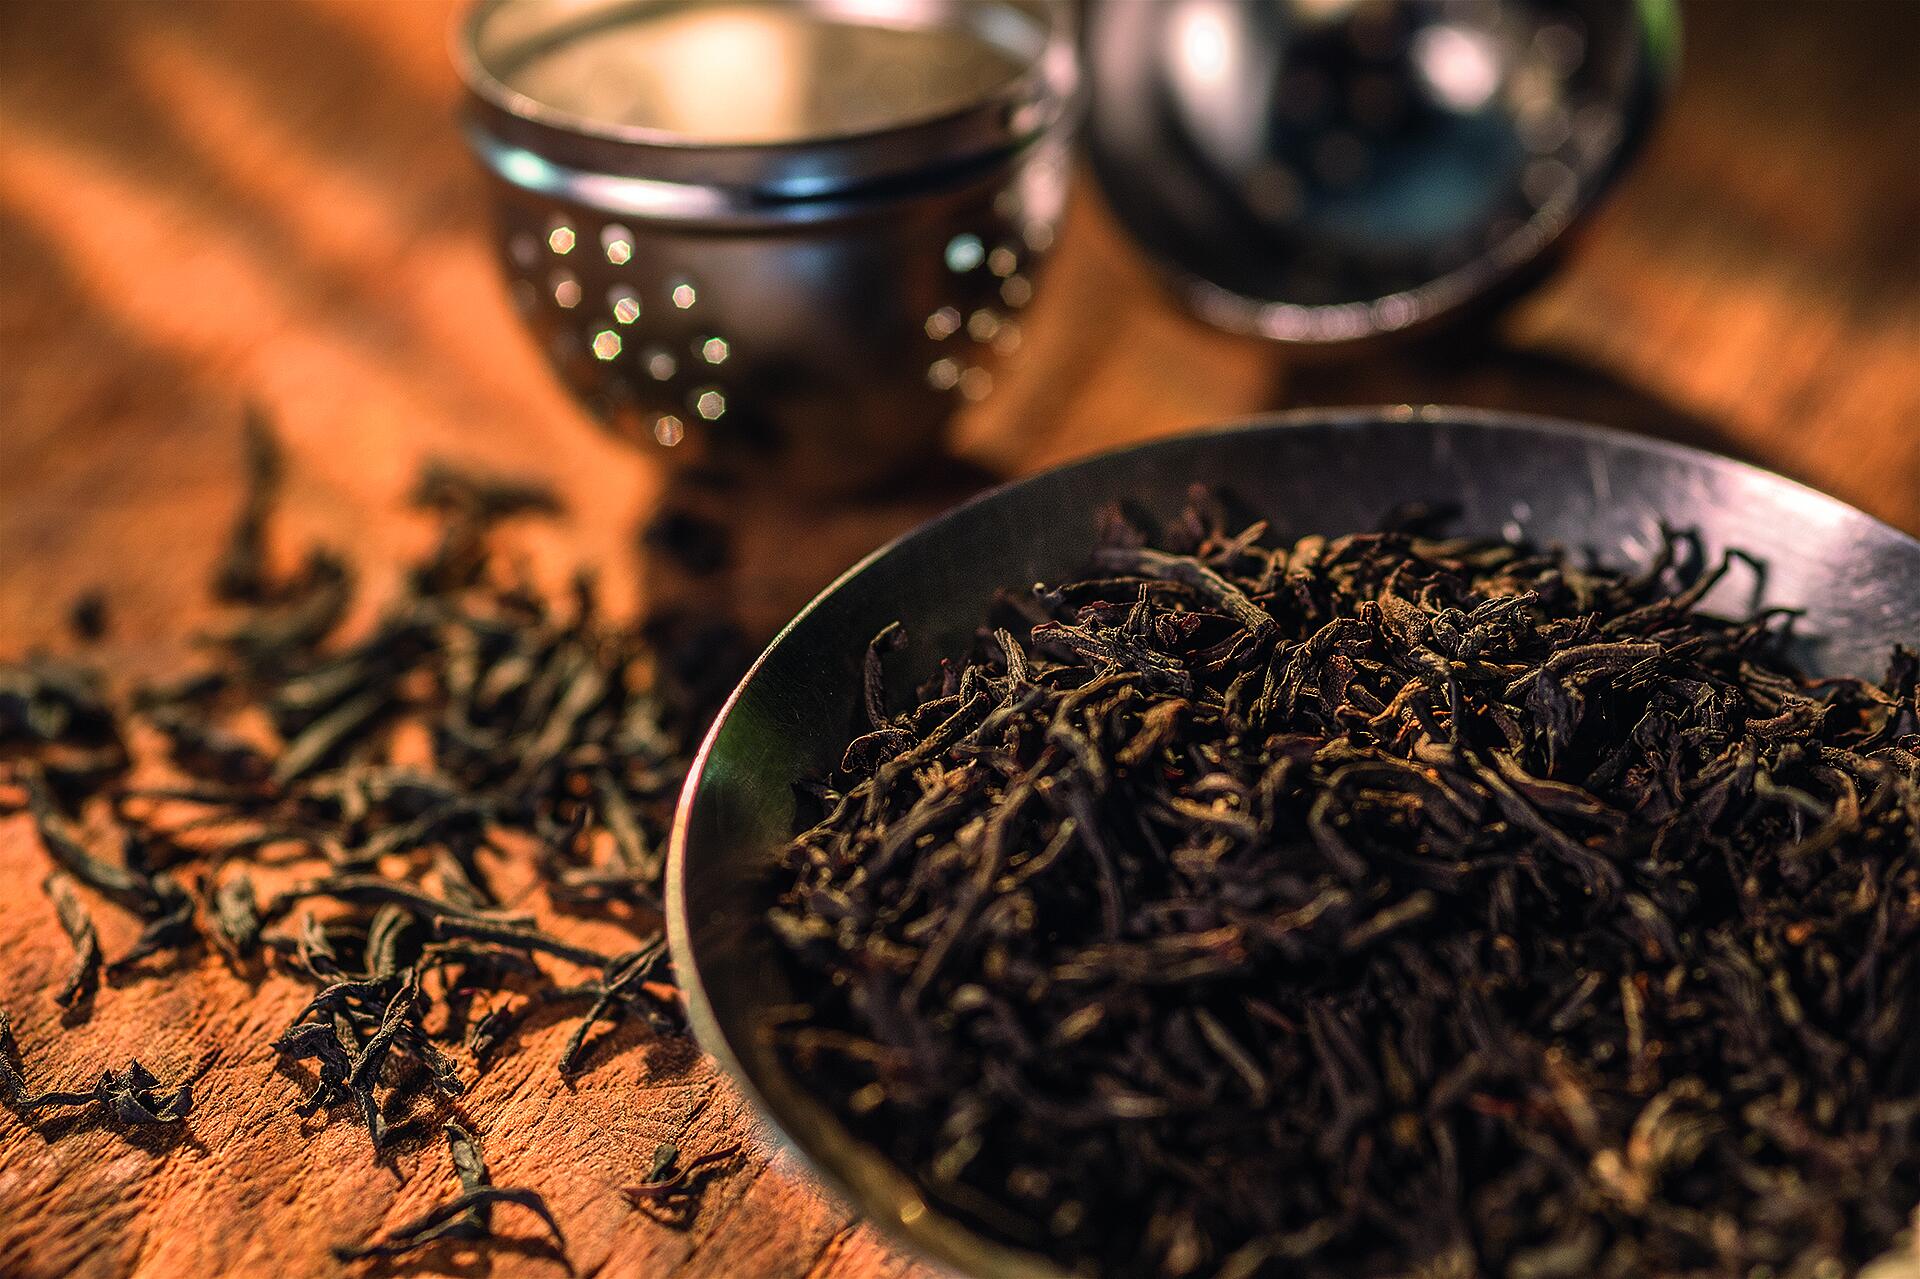 China Tie Kuan Yin Oolong Organic Tea*